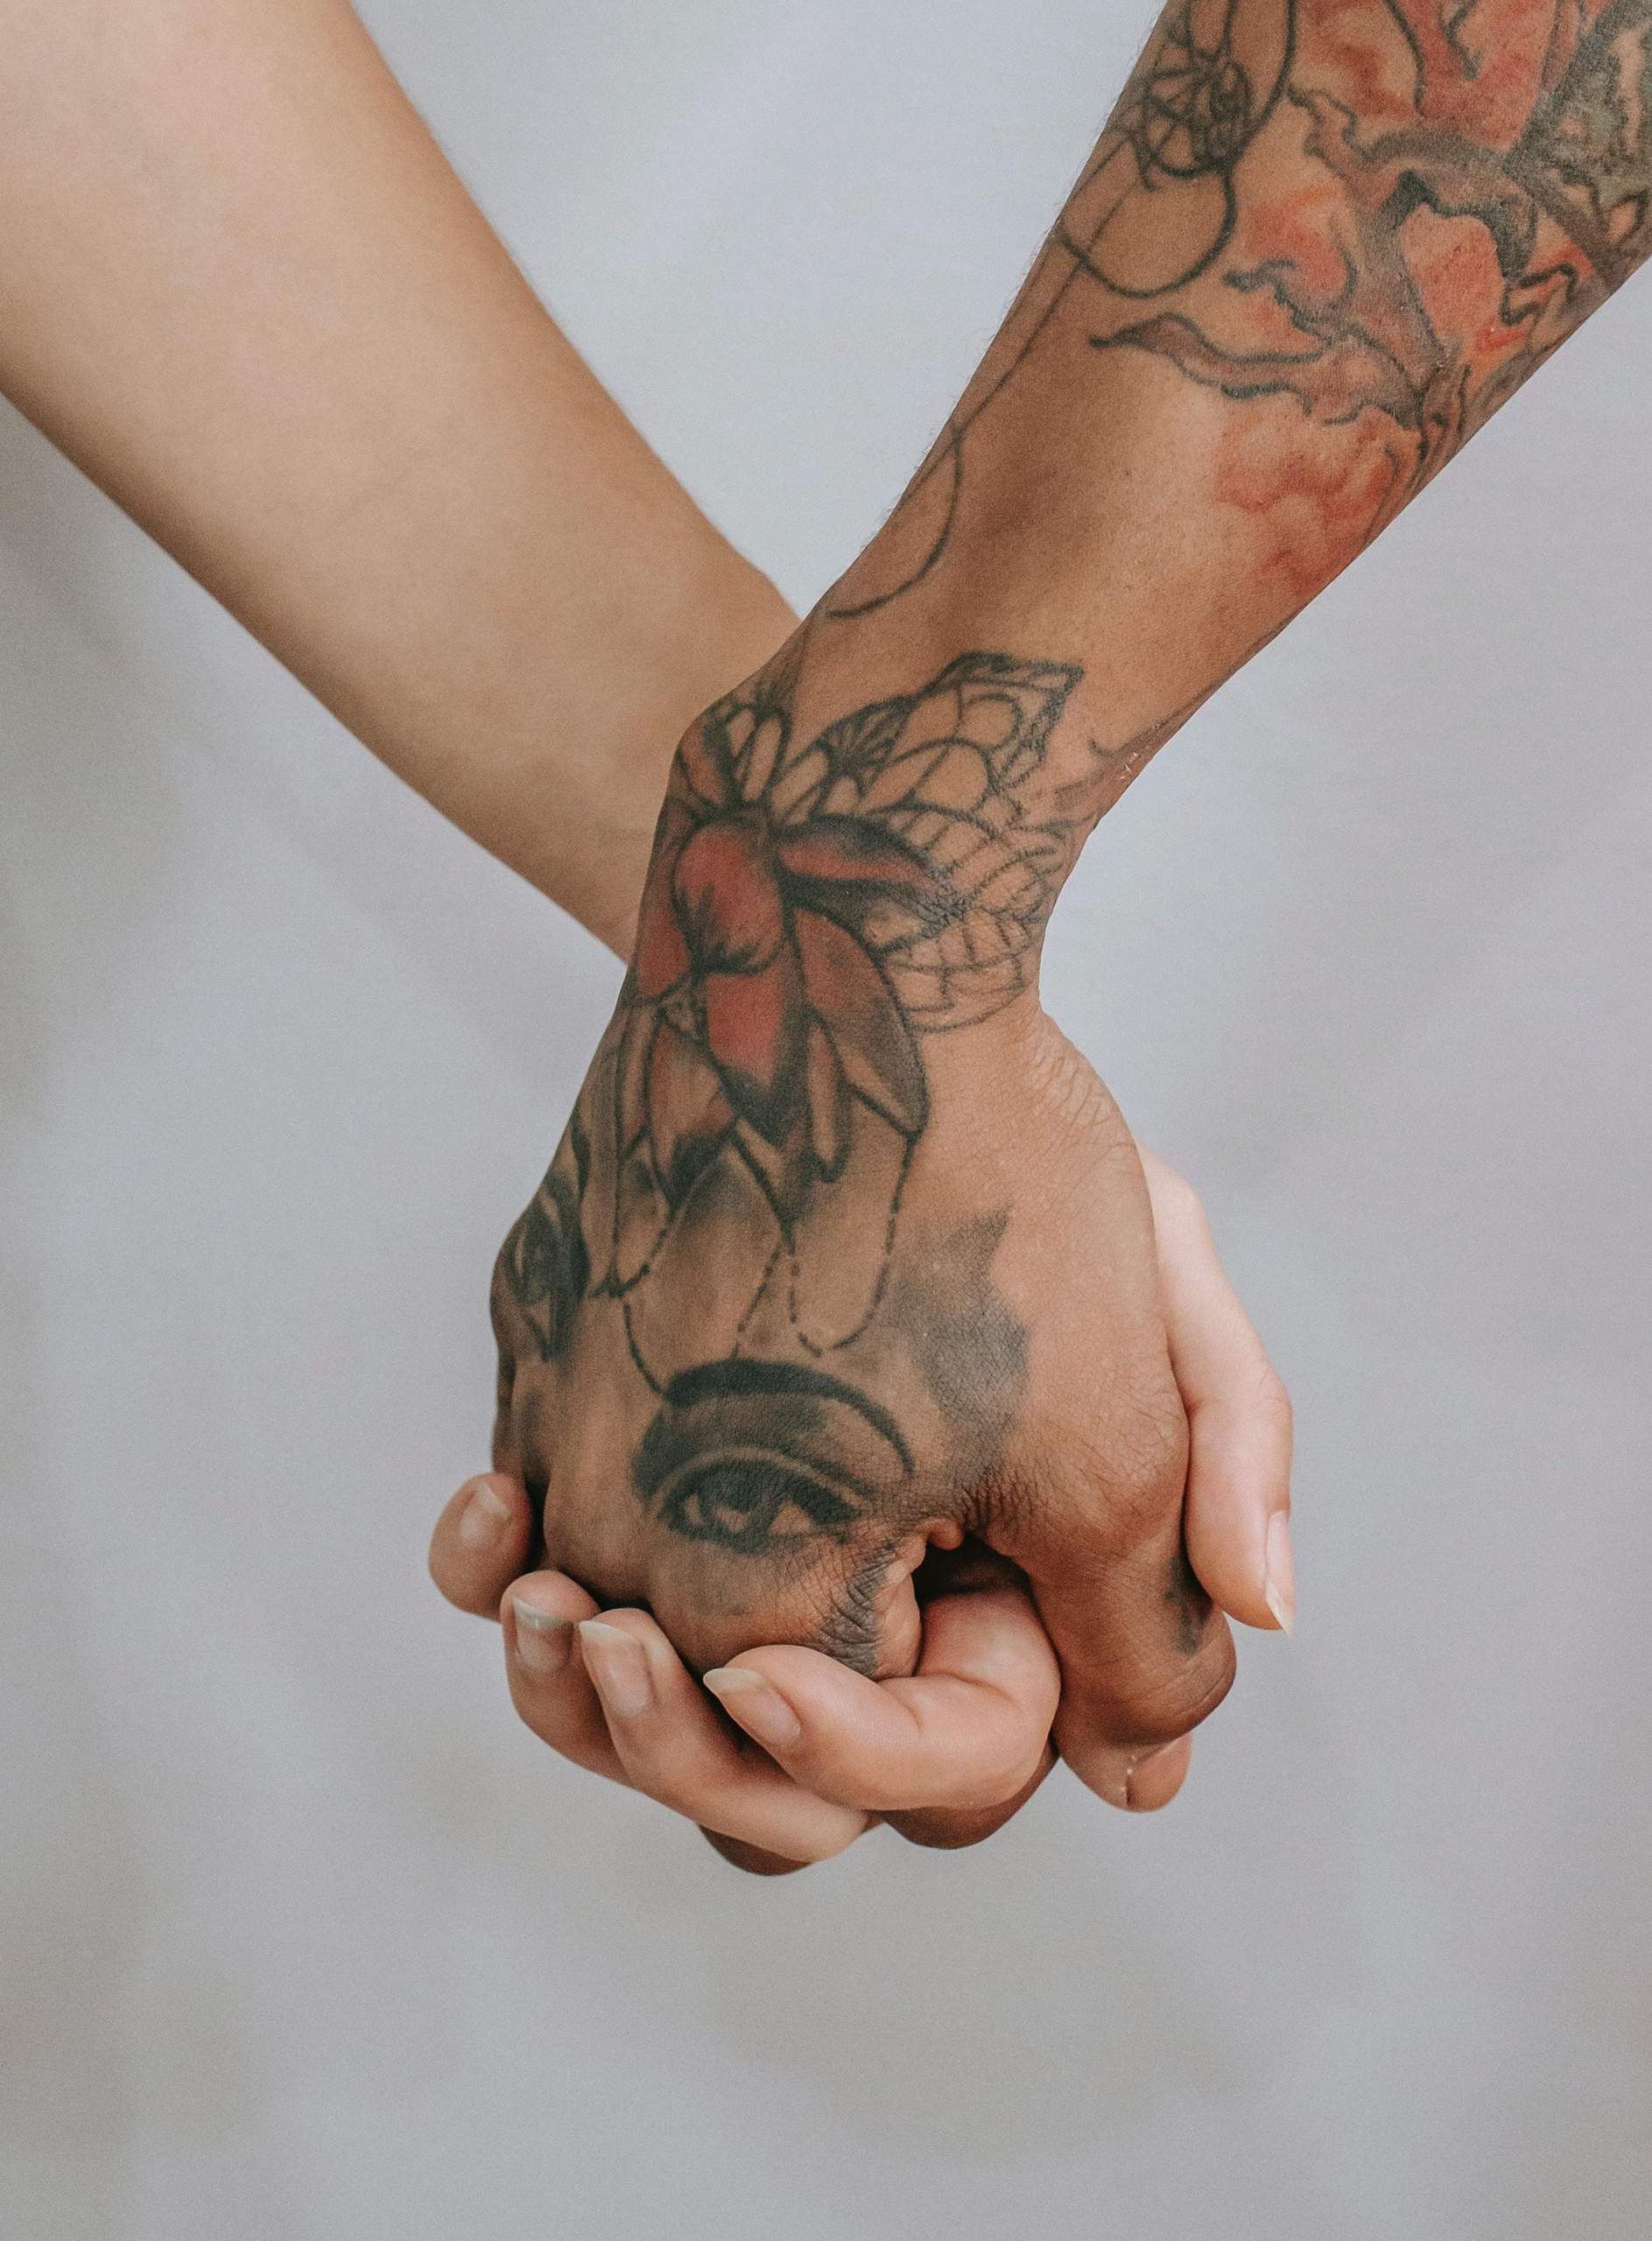 Welche Bedeutung hat die Zahl 13 als Tattoo? - Gutefrage